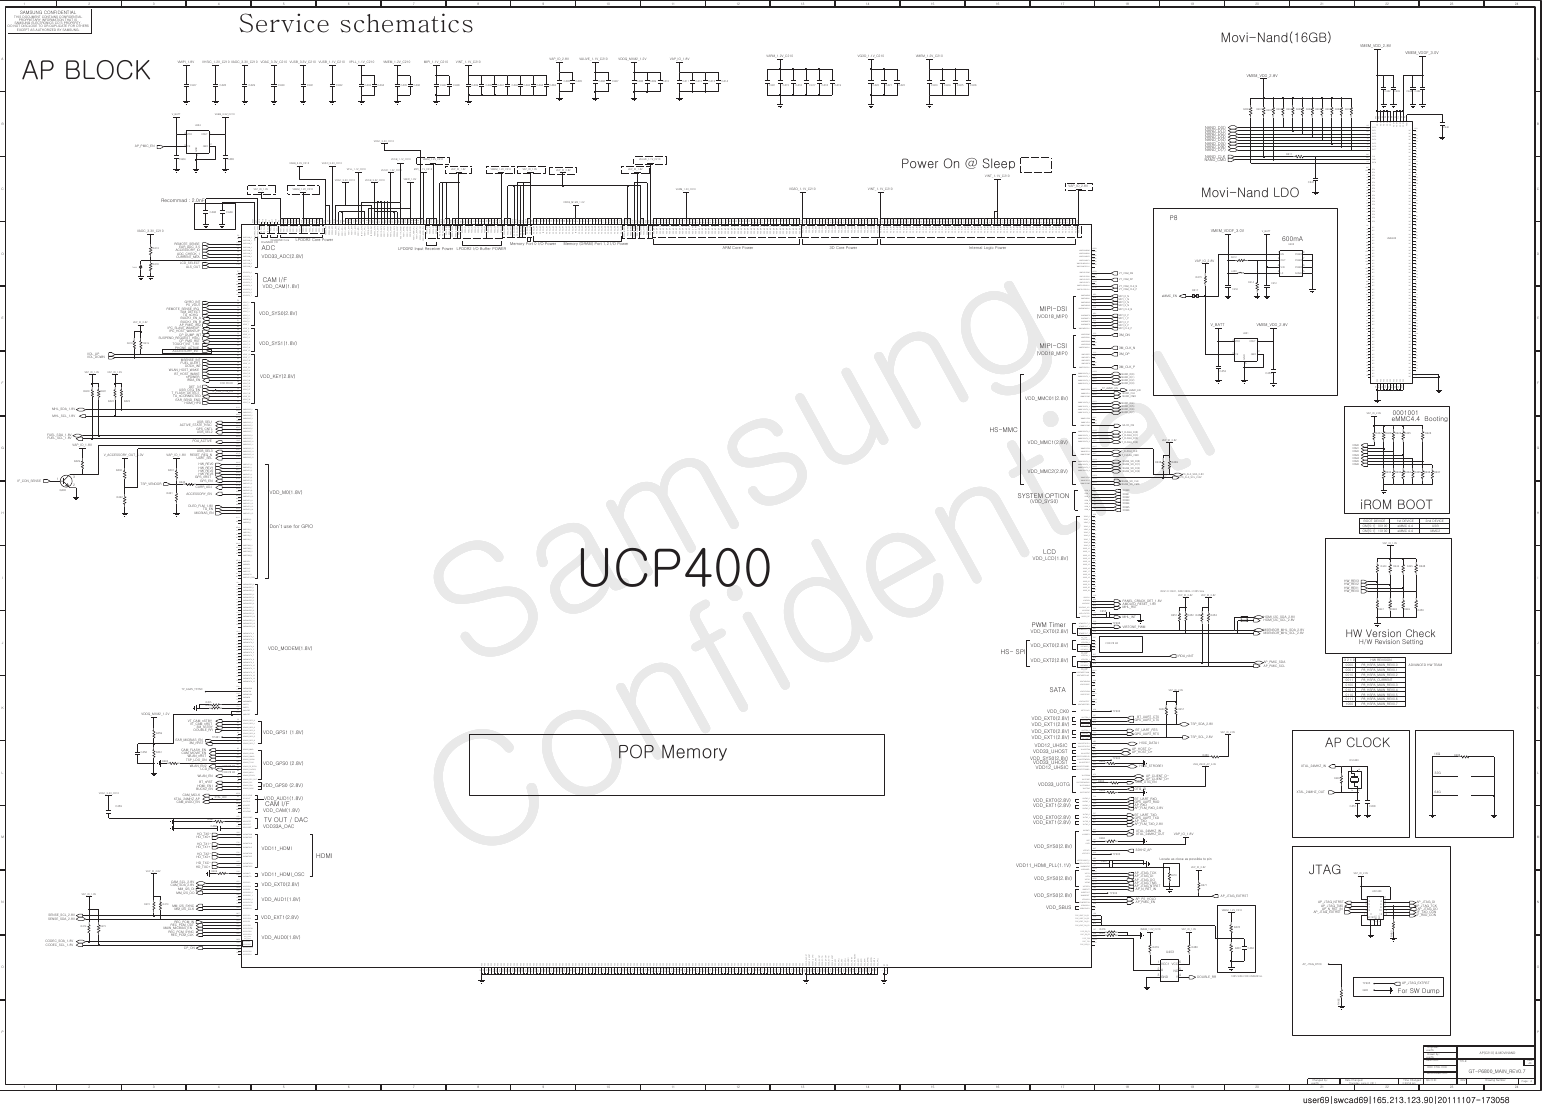 Page 4 of 12 - Samsung GT-P6800 - Schematics. Www.s-manuals.com. Service Schematics